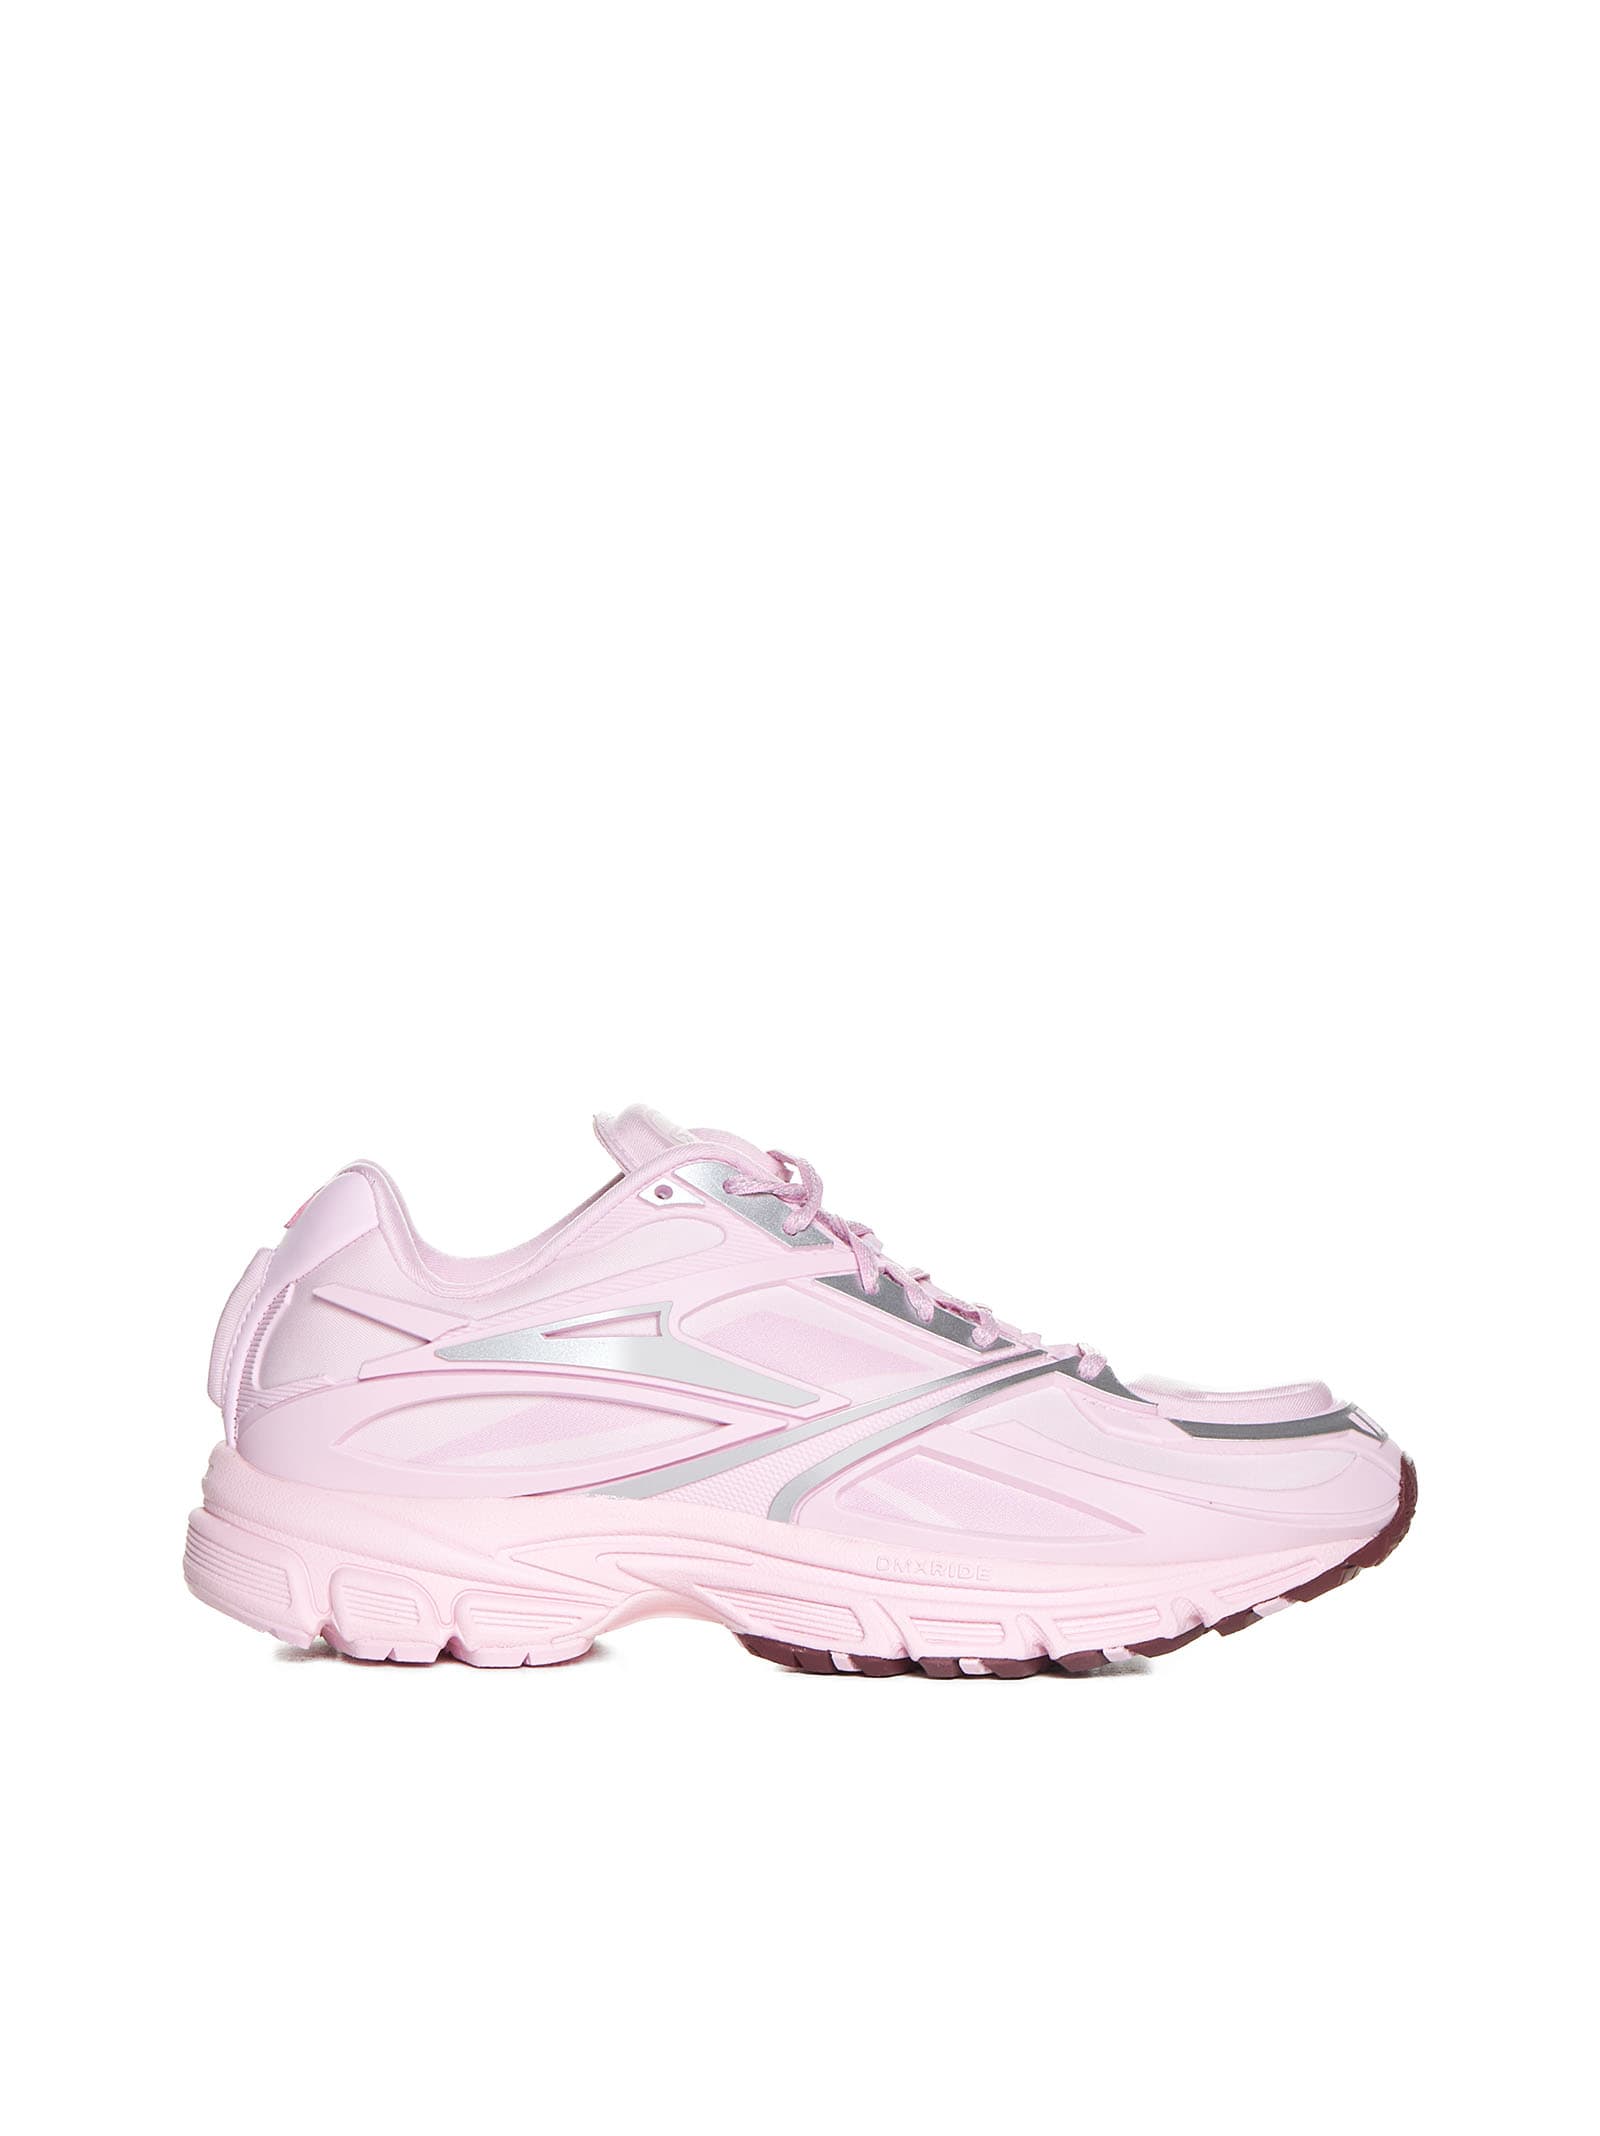 Reebok Sneakers In Metallic Pink